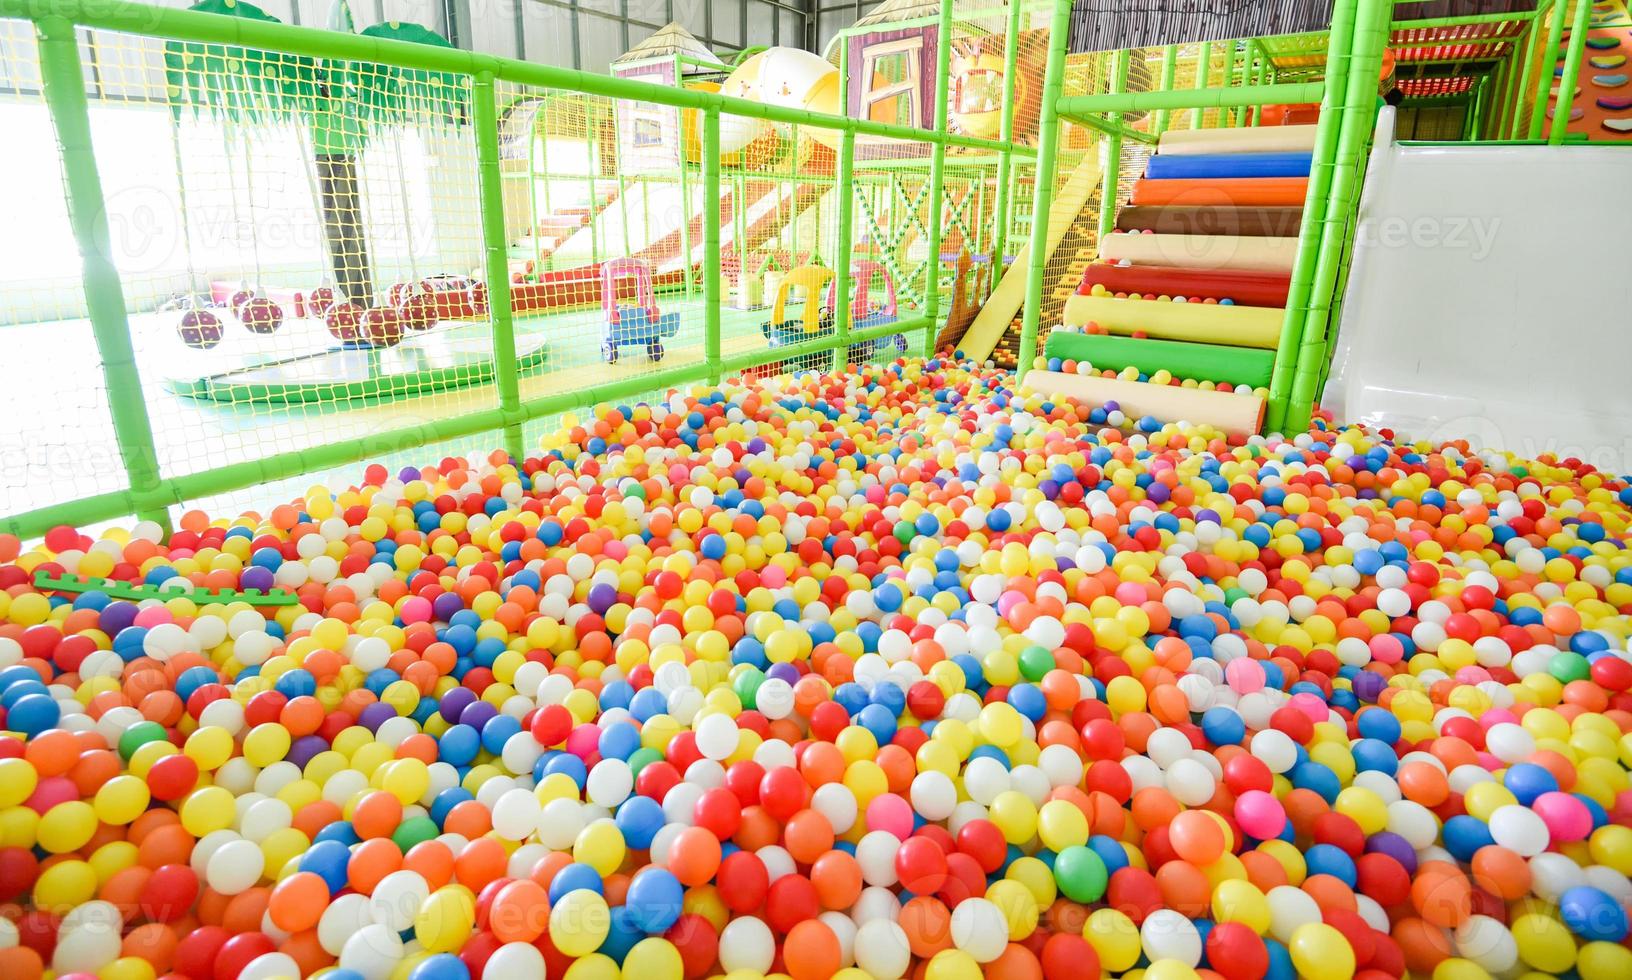 aire de jeux pour enfants à l'intérieur du parc d'attractions avec des balles colorées pour jouer - à l'intérieur de la belle balle de jeux pour enfants en plastique coloré de la salle de jeux photo